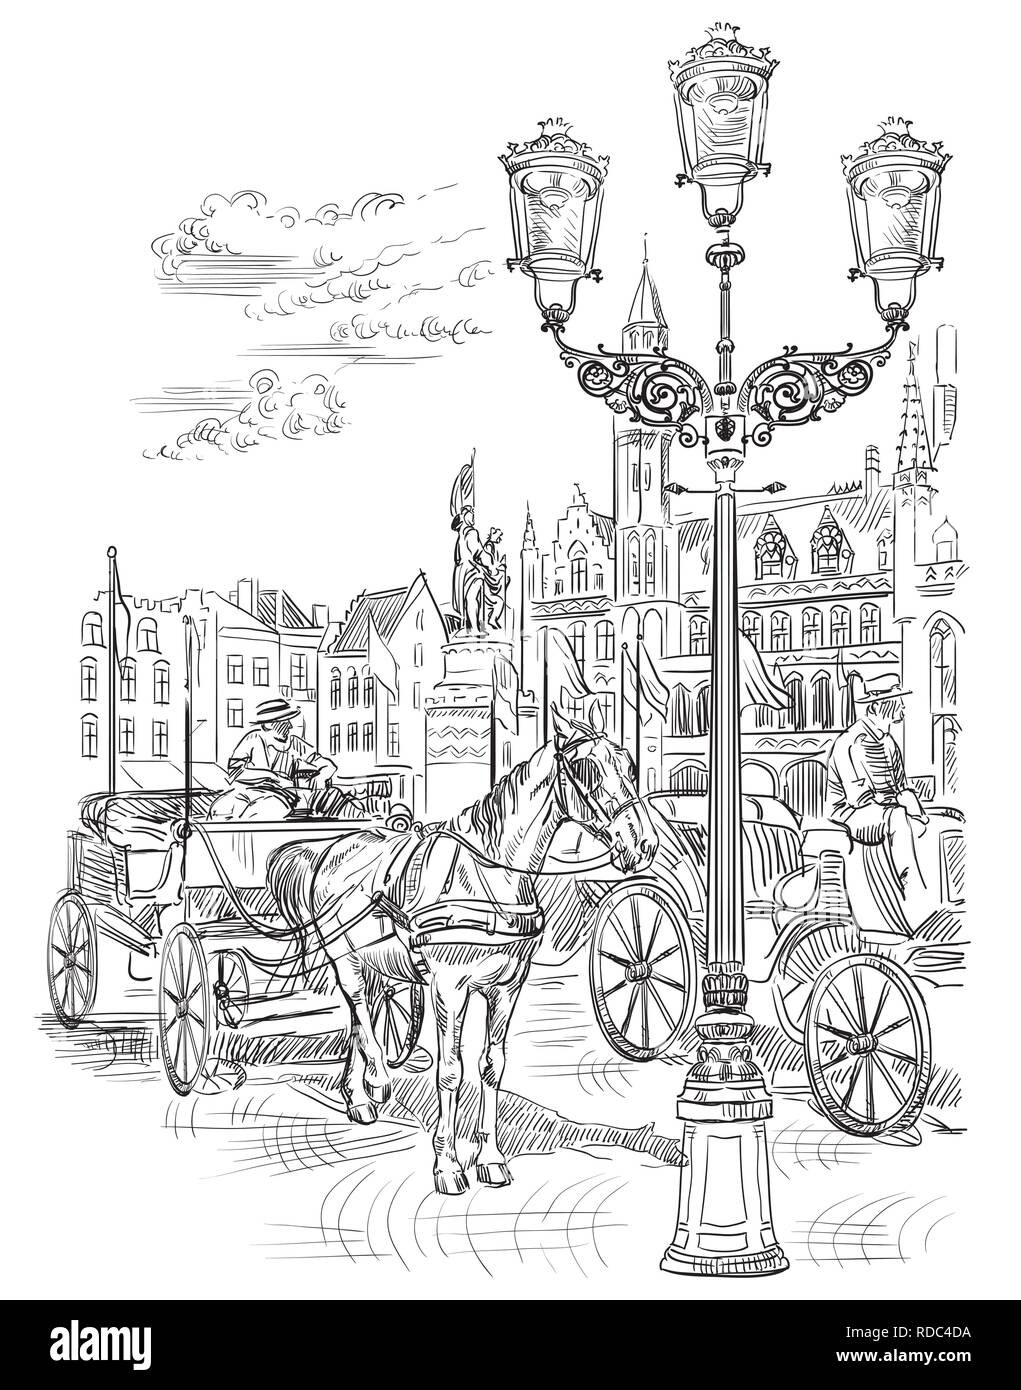 Vue sur Grote Markt dans la ville médiévale de Bruges, Belgique. Vue de la Belgique. Les chevaux, les voitures et les lanternes de la place du marché de Bruges. Vector ha Illustration de Vecteur